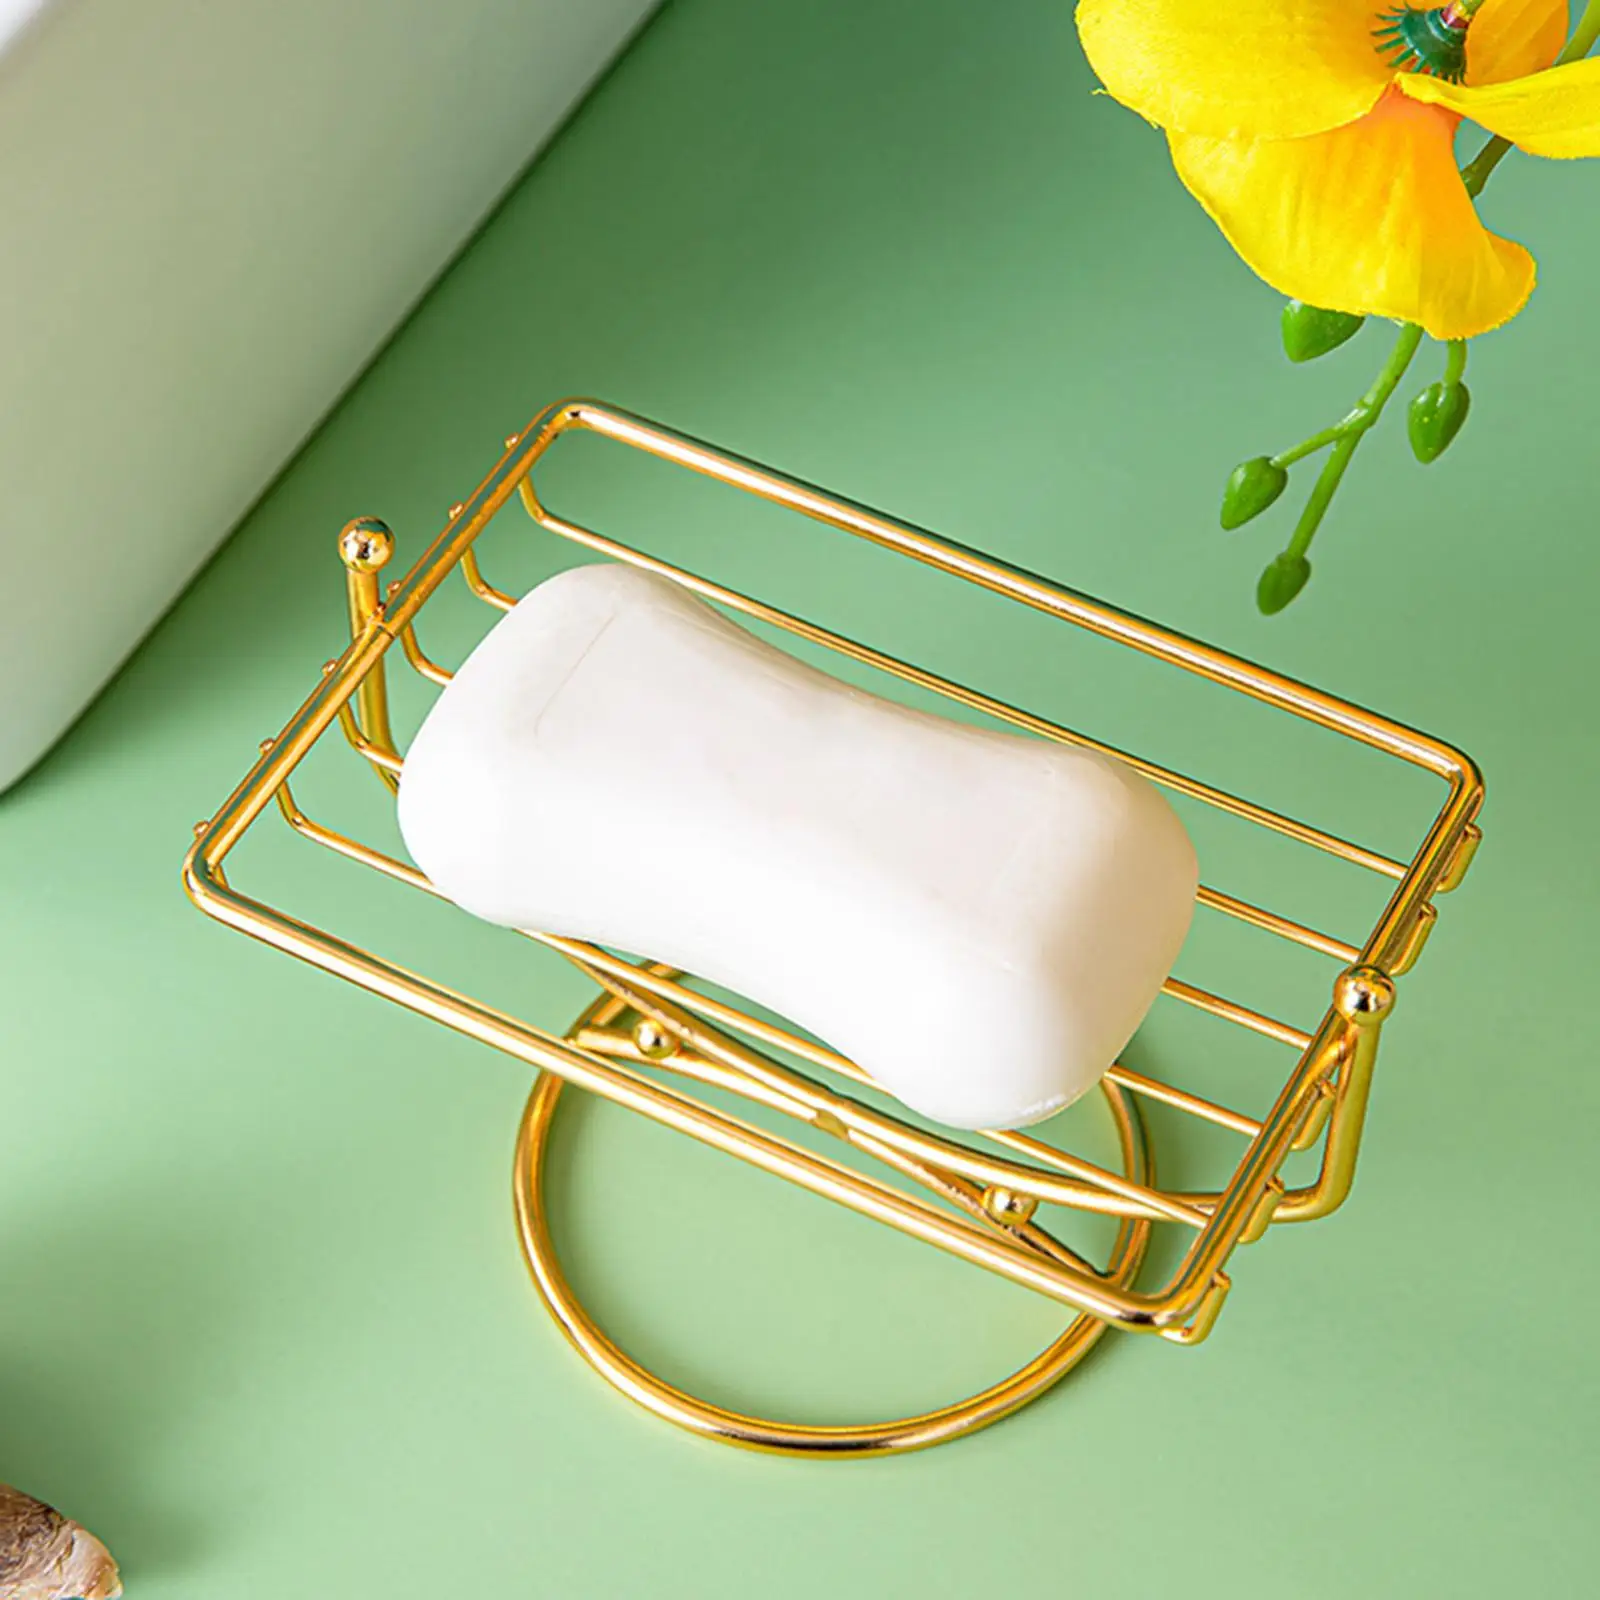 Stainless Steel Soap Sponge Holder Tray,Self Draining Shelf Rectangular Soap Saver for Bathroom Toilet Shower